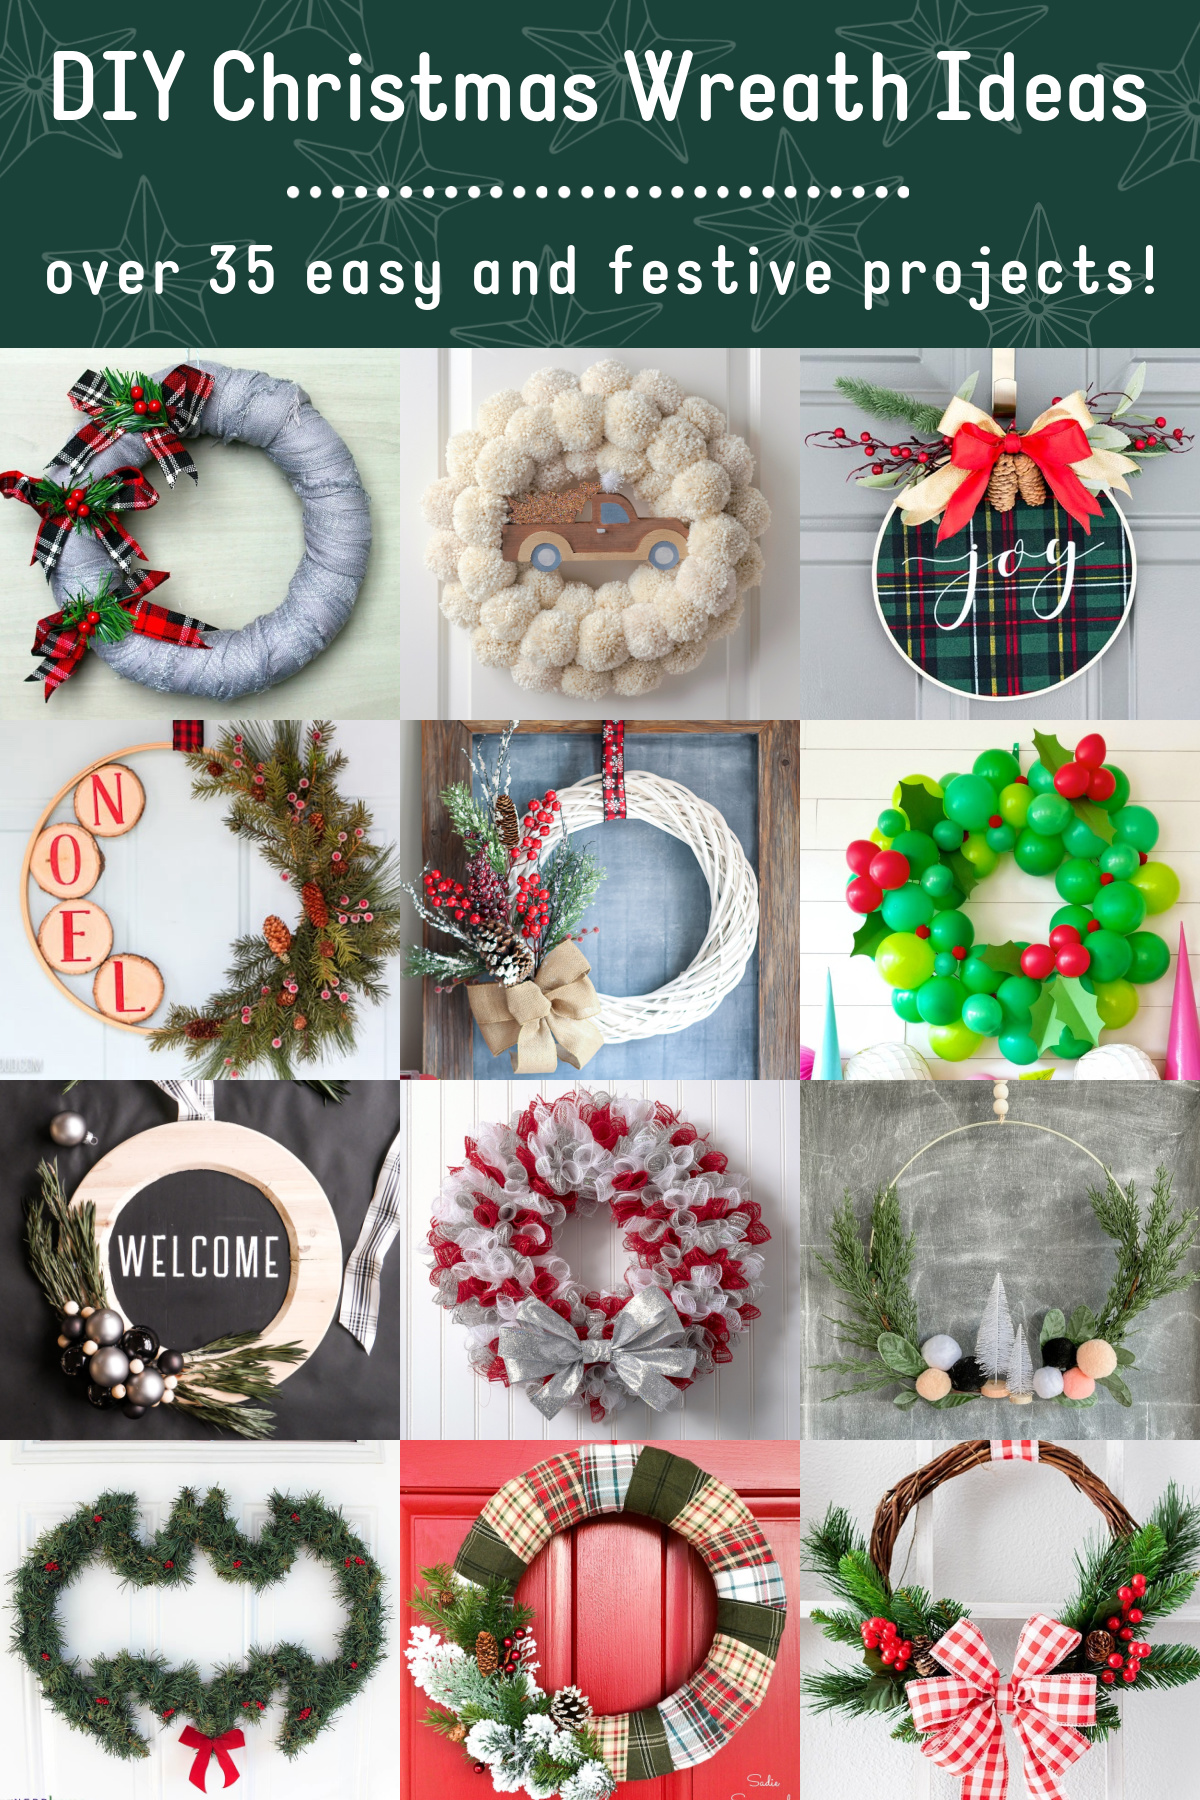 DIY Christmas wreath ideas for your home